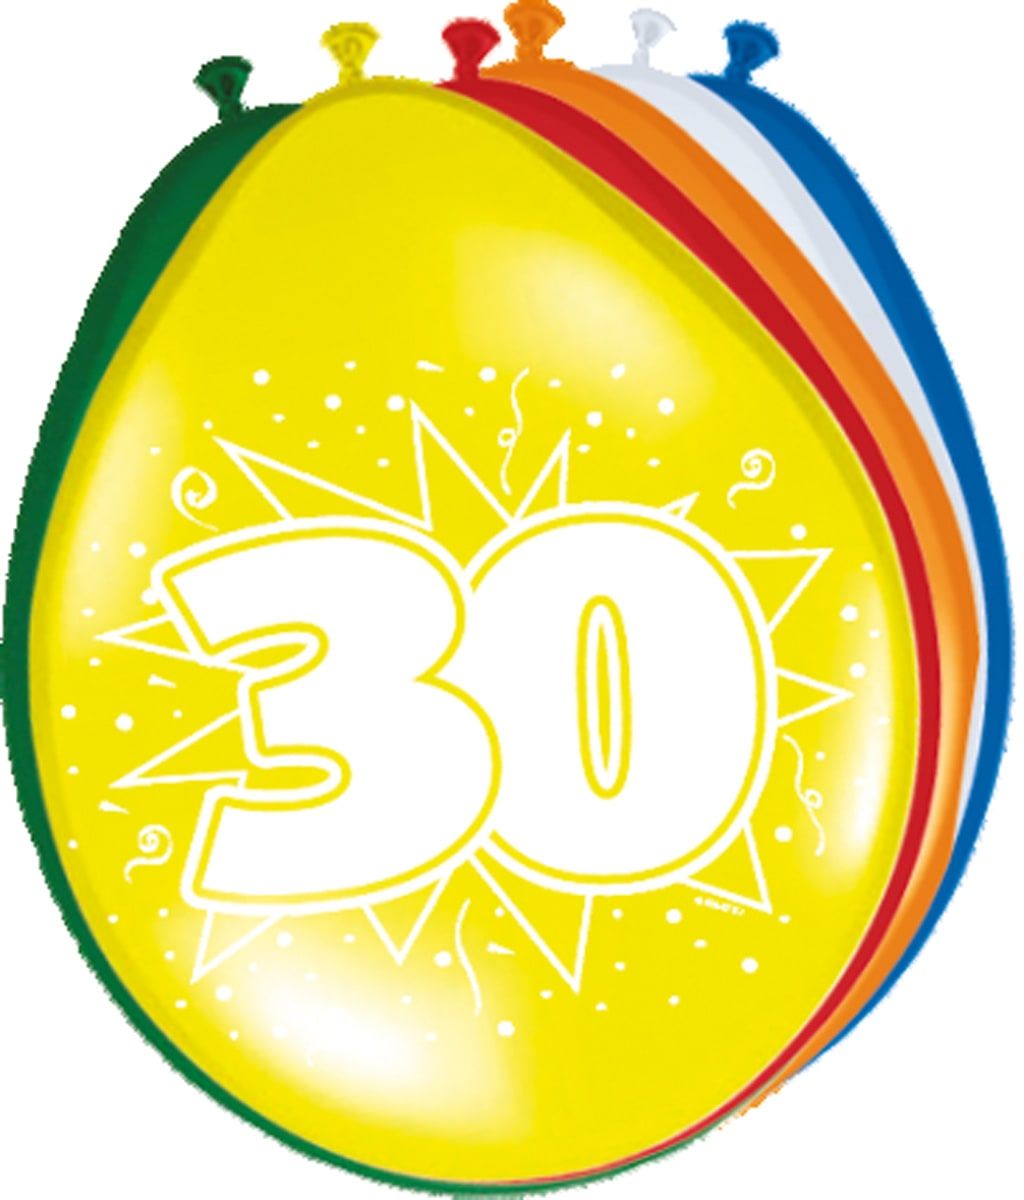 8 feestelijke verjaardag ballonnen 30 jaar